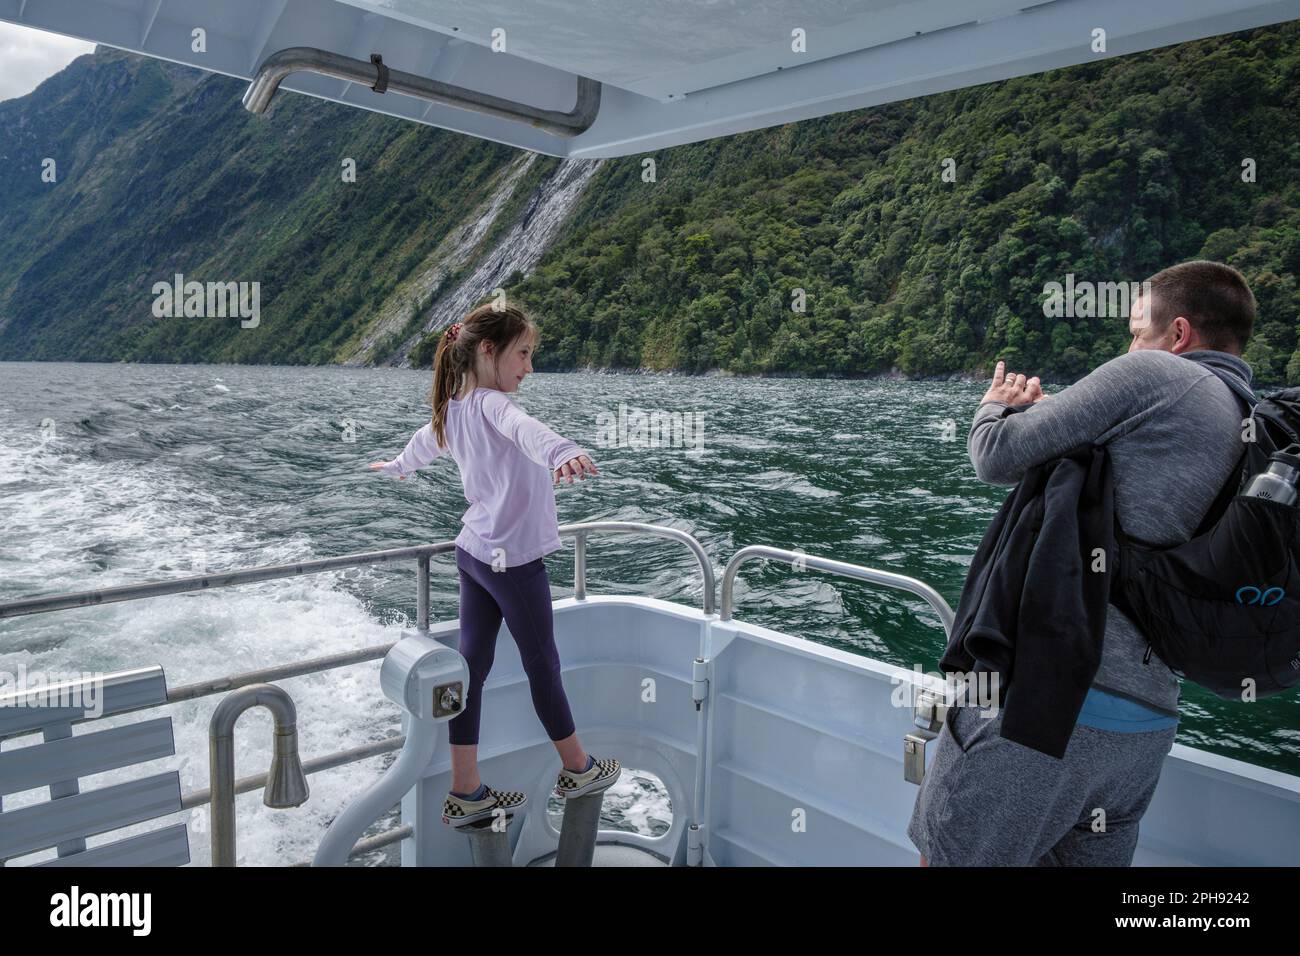 Une jeune fille qui fait une pose « Titanic » pour une photographie lors d'une excursion en bateau sur Milford Sound, Île du Sud, Nouvelle-Zélande Banque D'Images